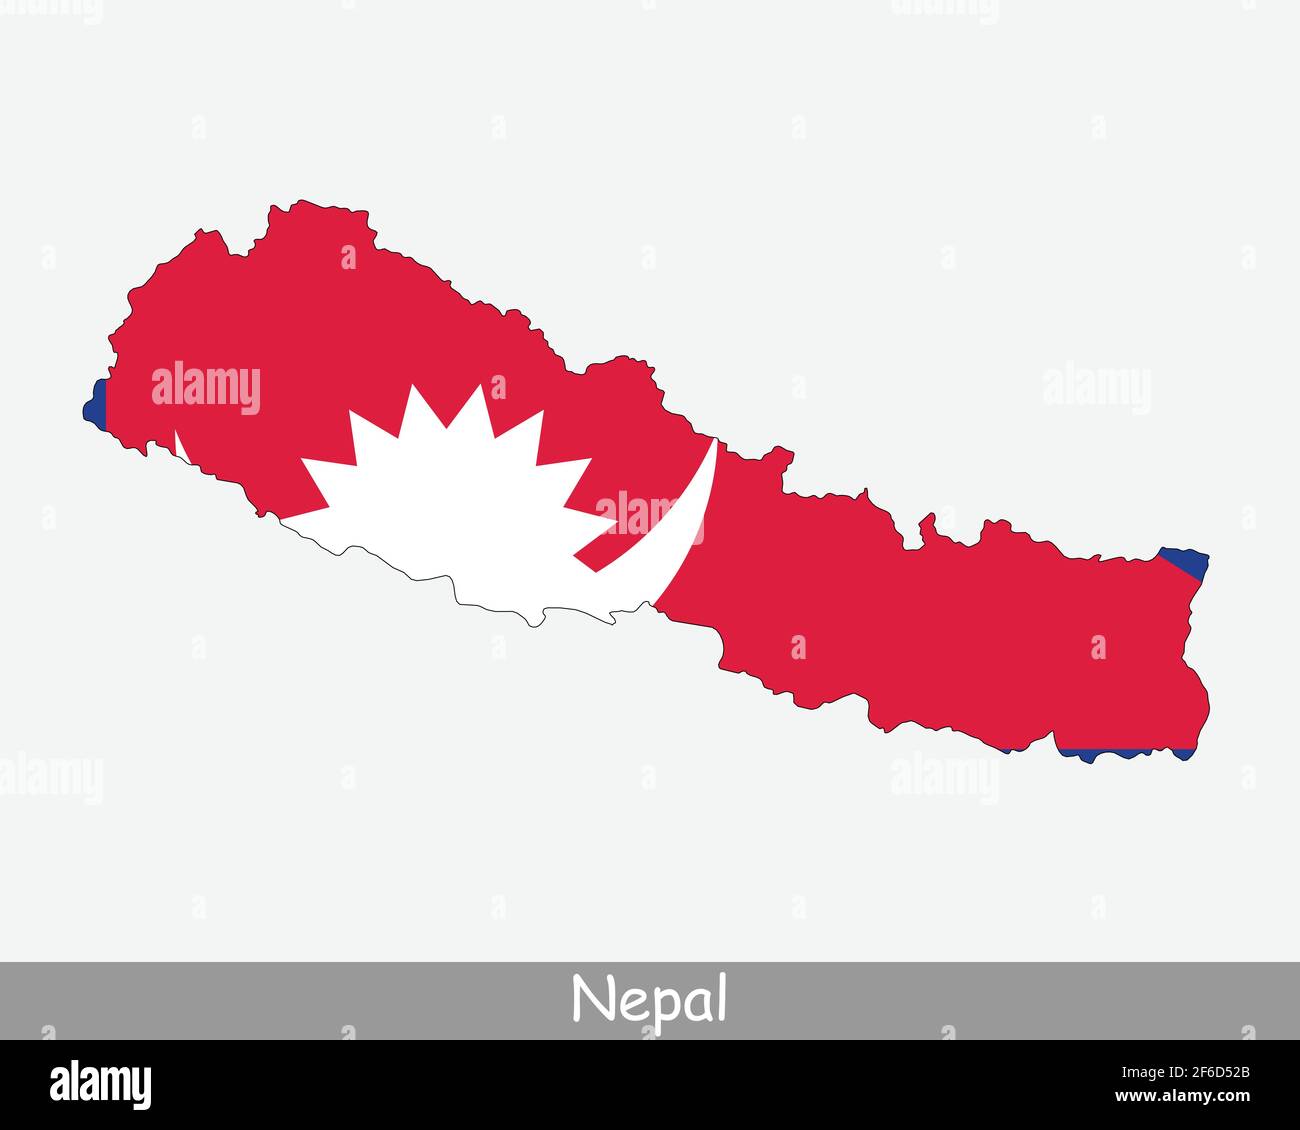 Mappa della bandiera del Nepal. Carta della Repubblica Democratica Federale del Nepal con bandiera nazionale nepalese isolata su sfondo bianco. Illustrazione vettoriale. Illustrazione Vettoriale